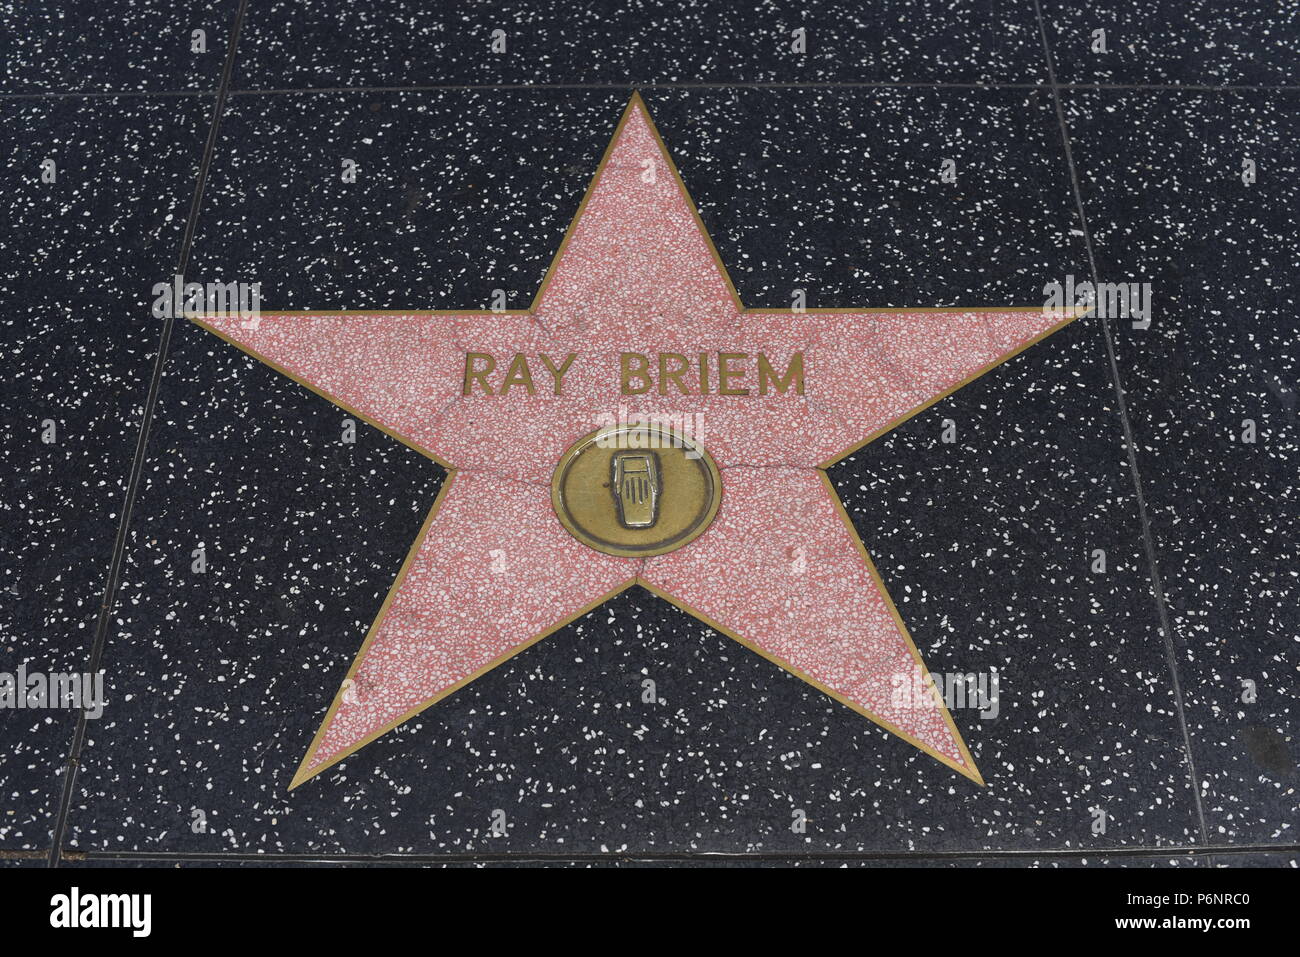 HOLLYWOOD, CA - 29 Giugno: Ray Briem stella sulla Hollywood Walk of Fame in Hollywood, la California il 29 giugno 2018. Foto Stock